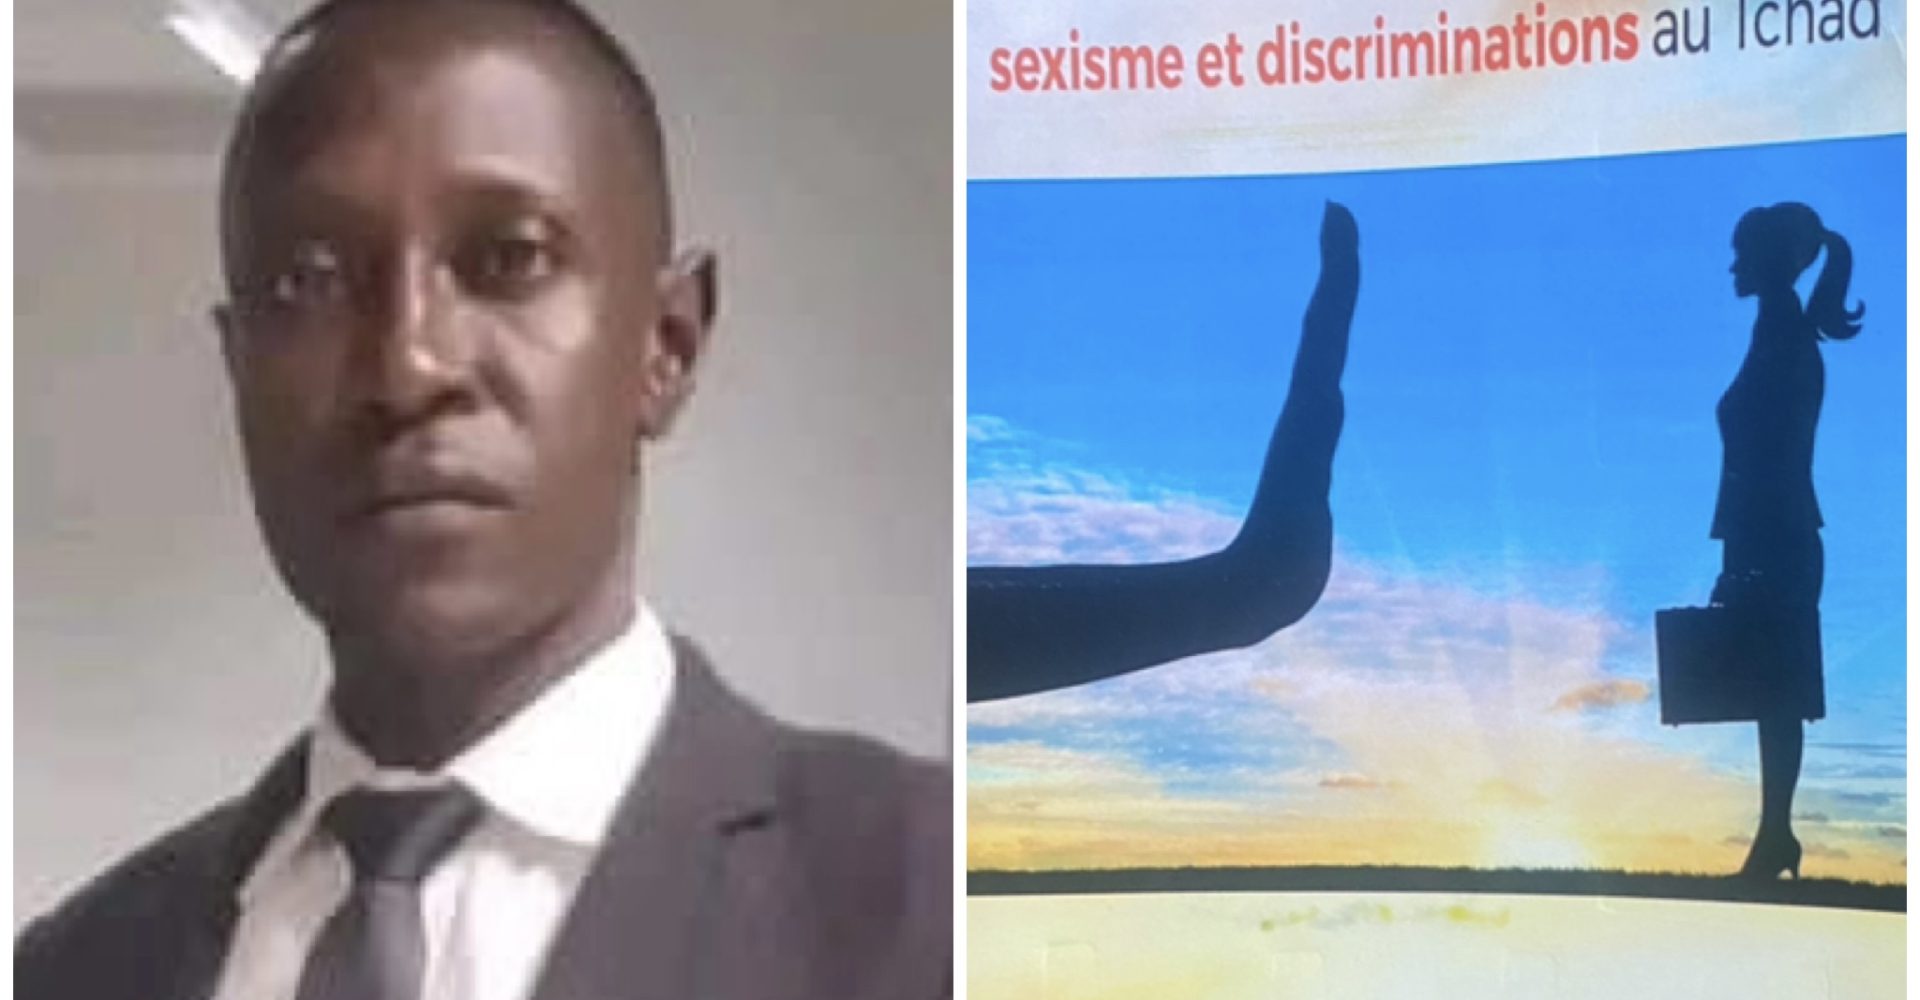 Le juriste Abdel-aziz Issakha décortique les discriminations dans son livre “sexisme et discriminations  au Tchad” 1